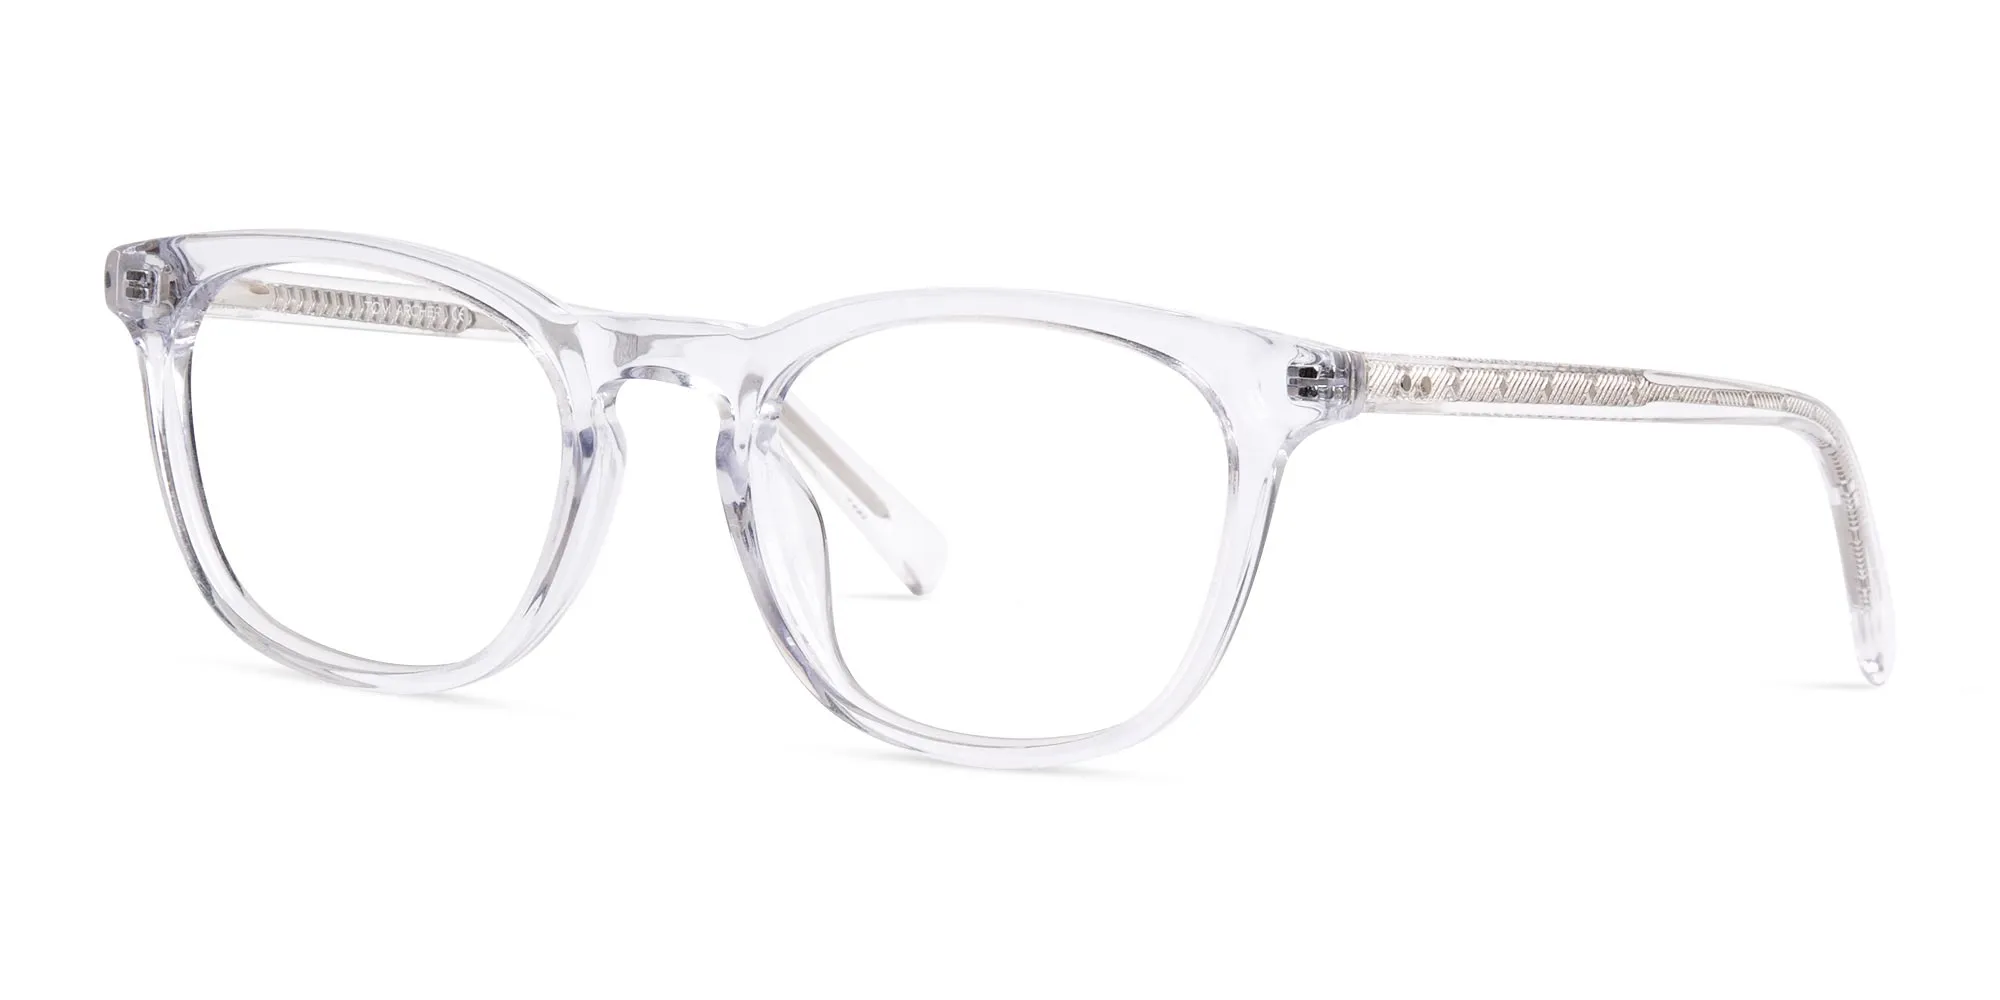 crystal clear or transparent full rim glasses frames-2